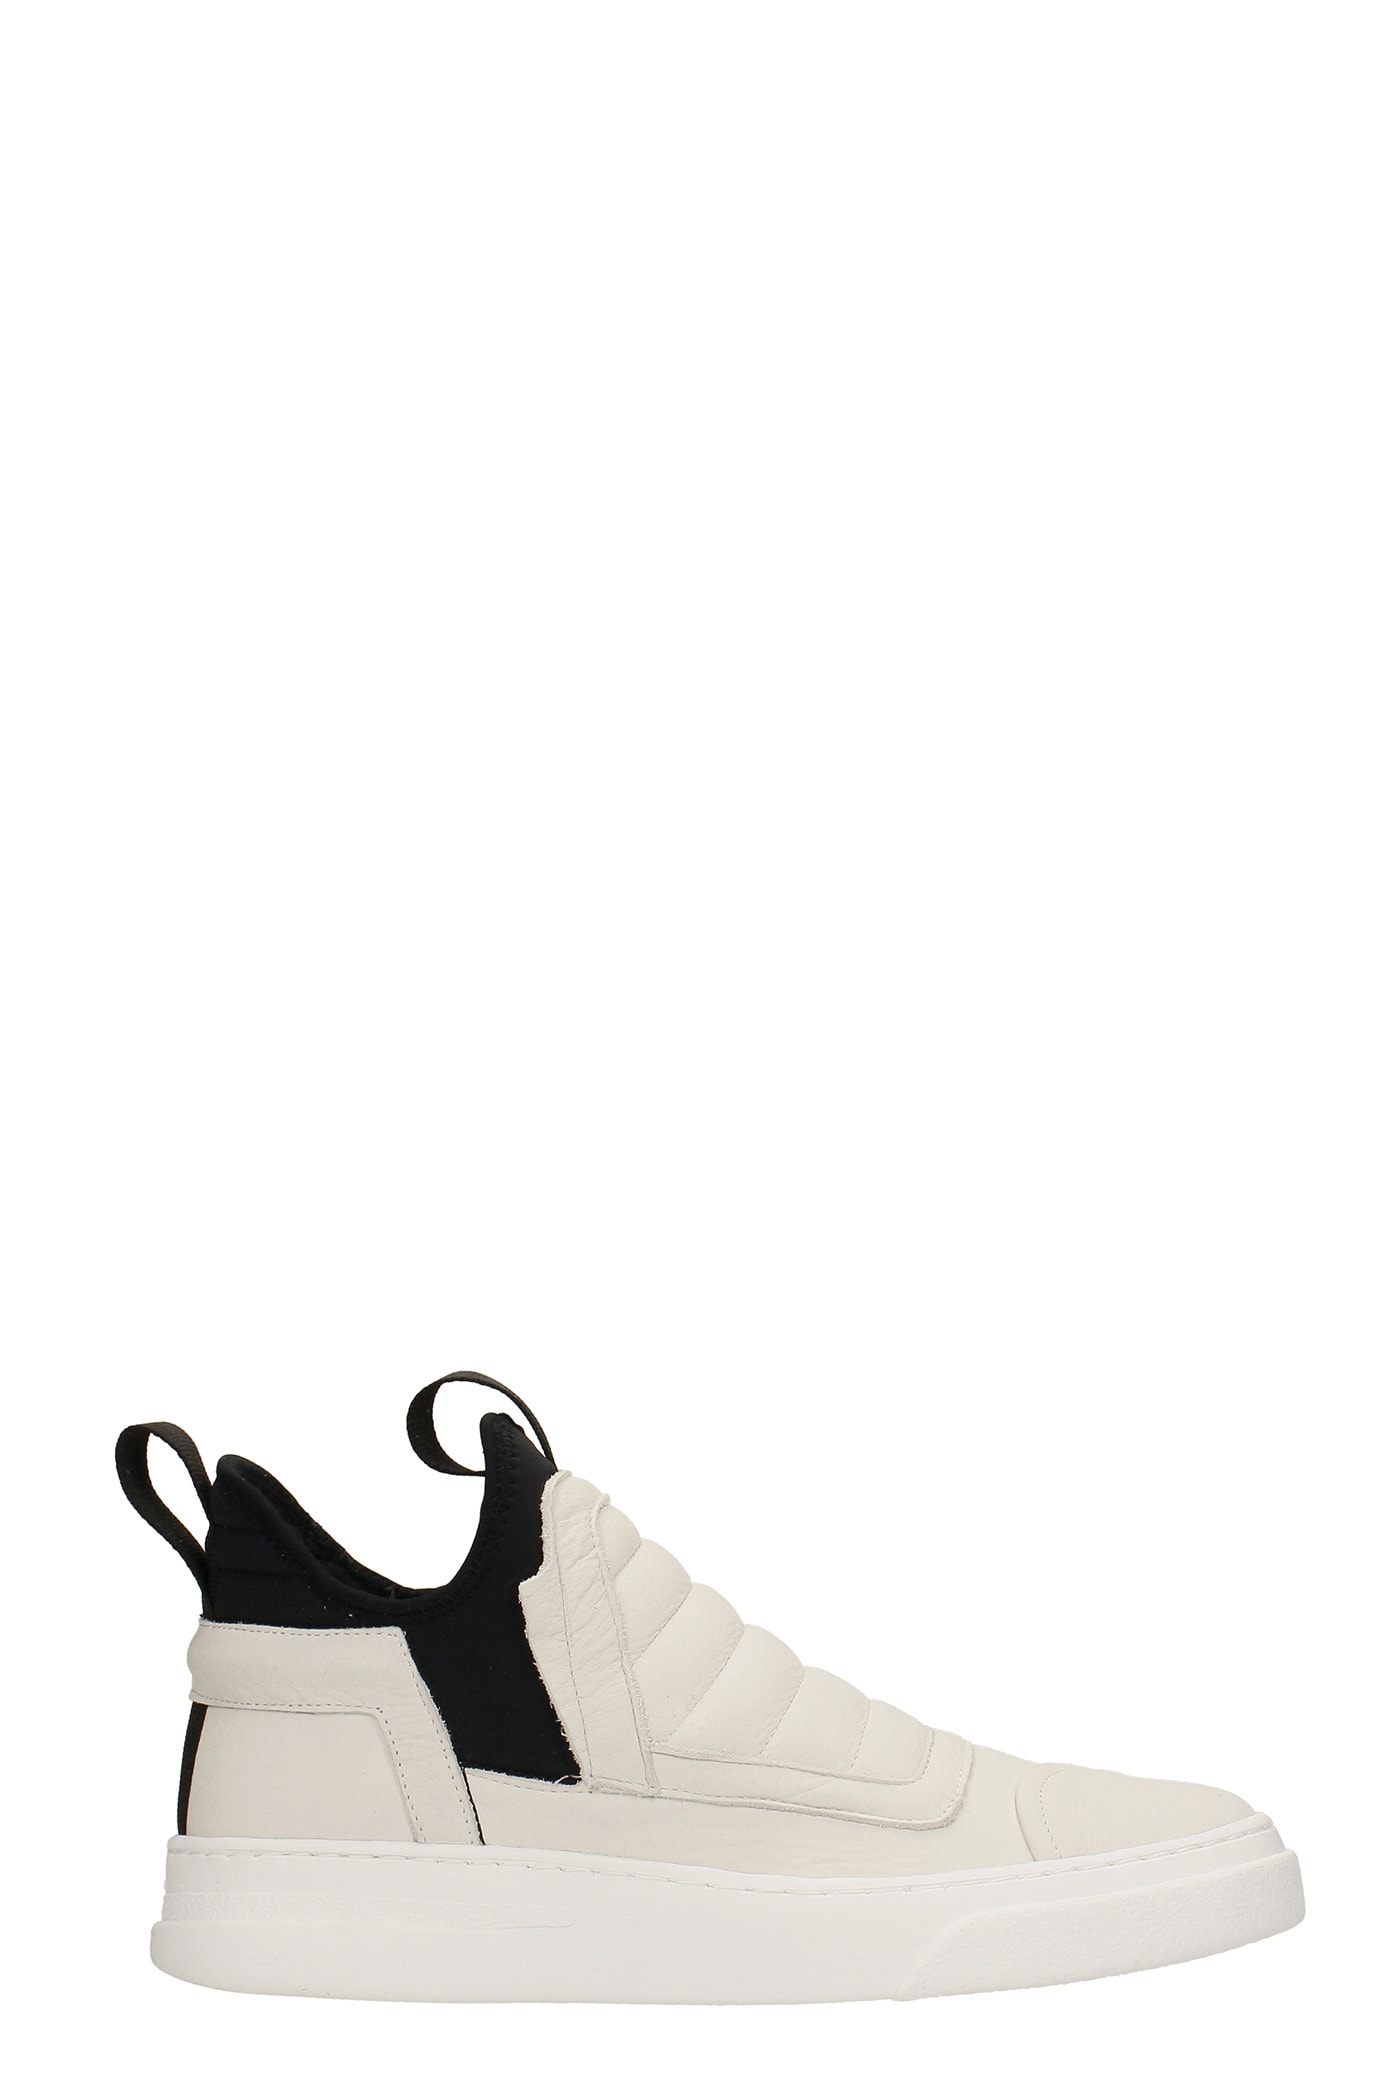 Bruno Bordese Damper Sneakers In White Nubuck